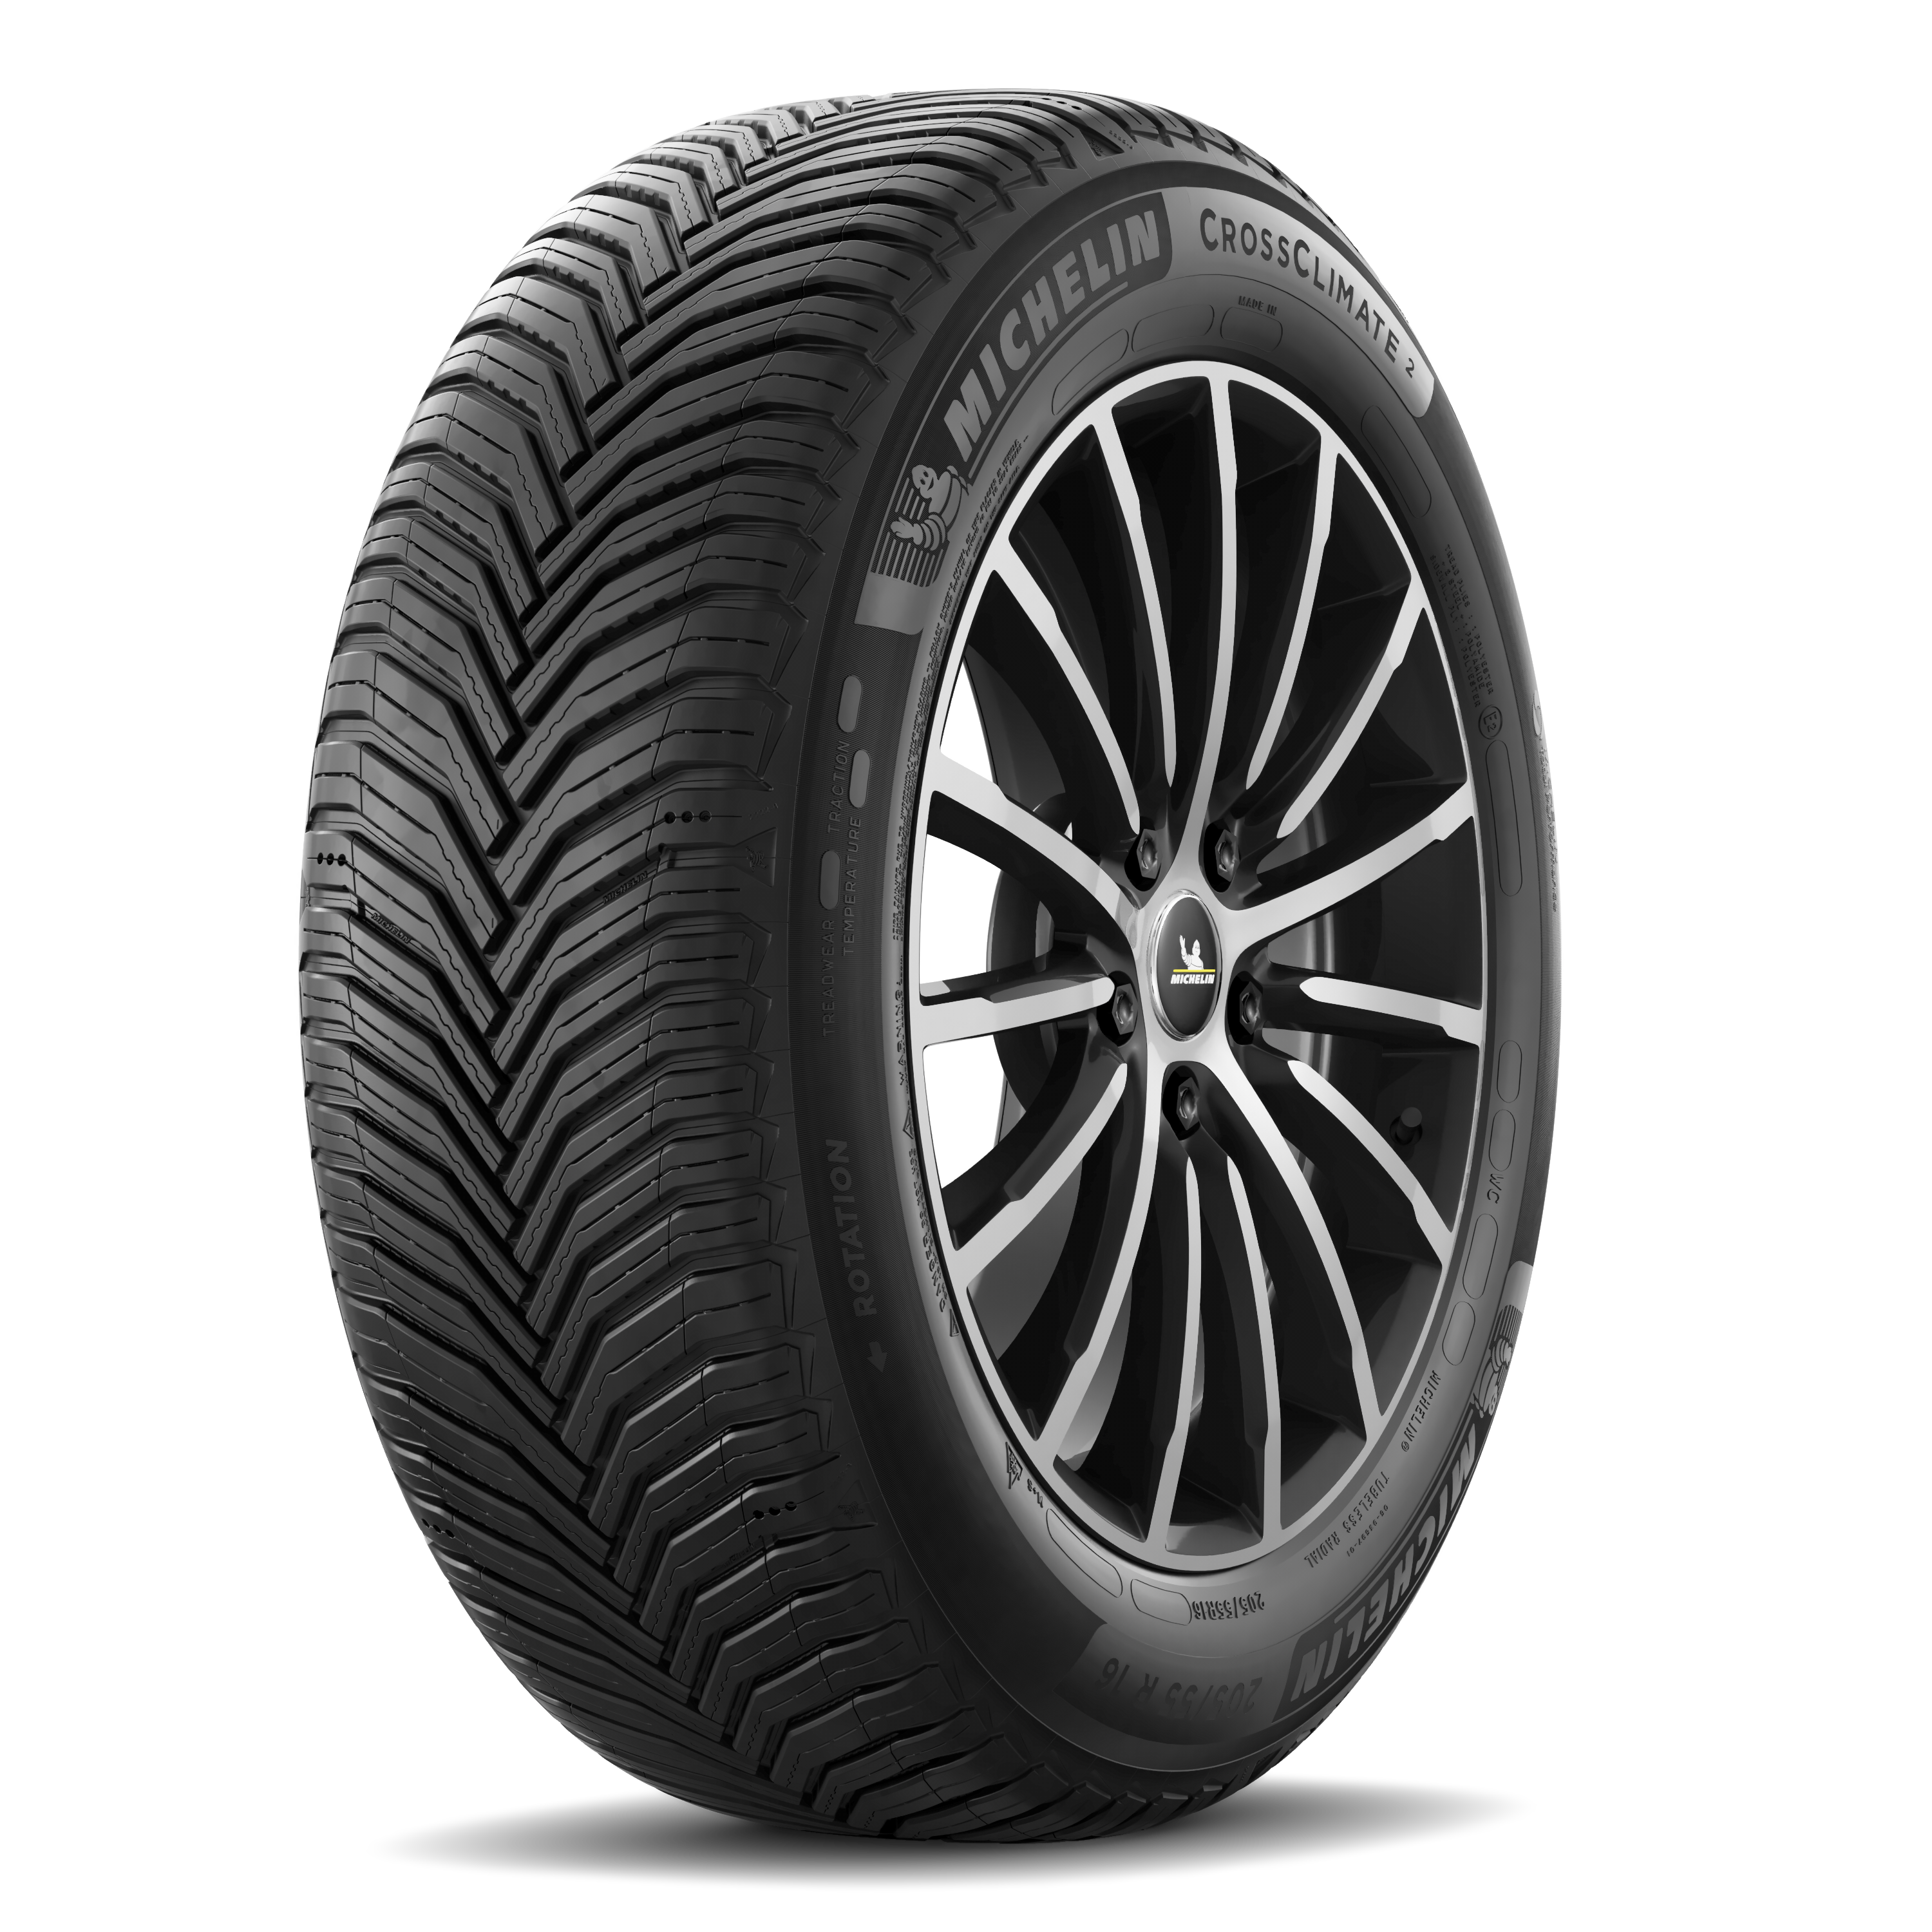 Gomme Nuove Michelin 225/55 R18 102V CROSSCLIMATE 2 M+S pneumatici nuovi All Season